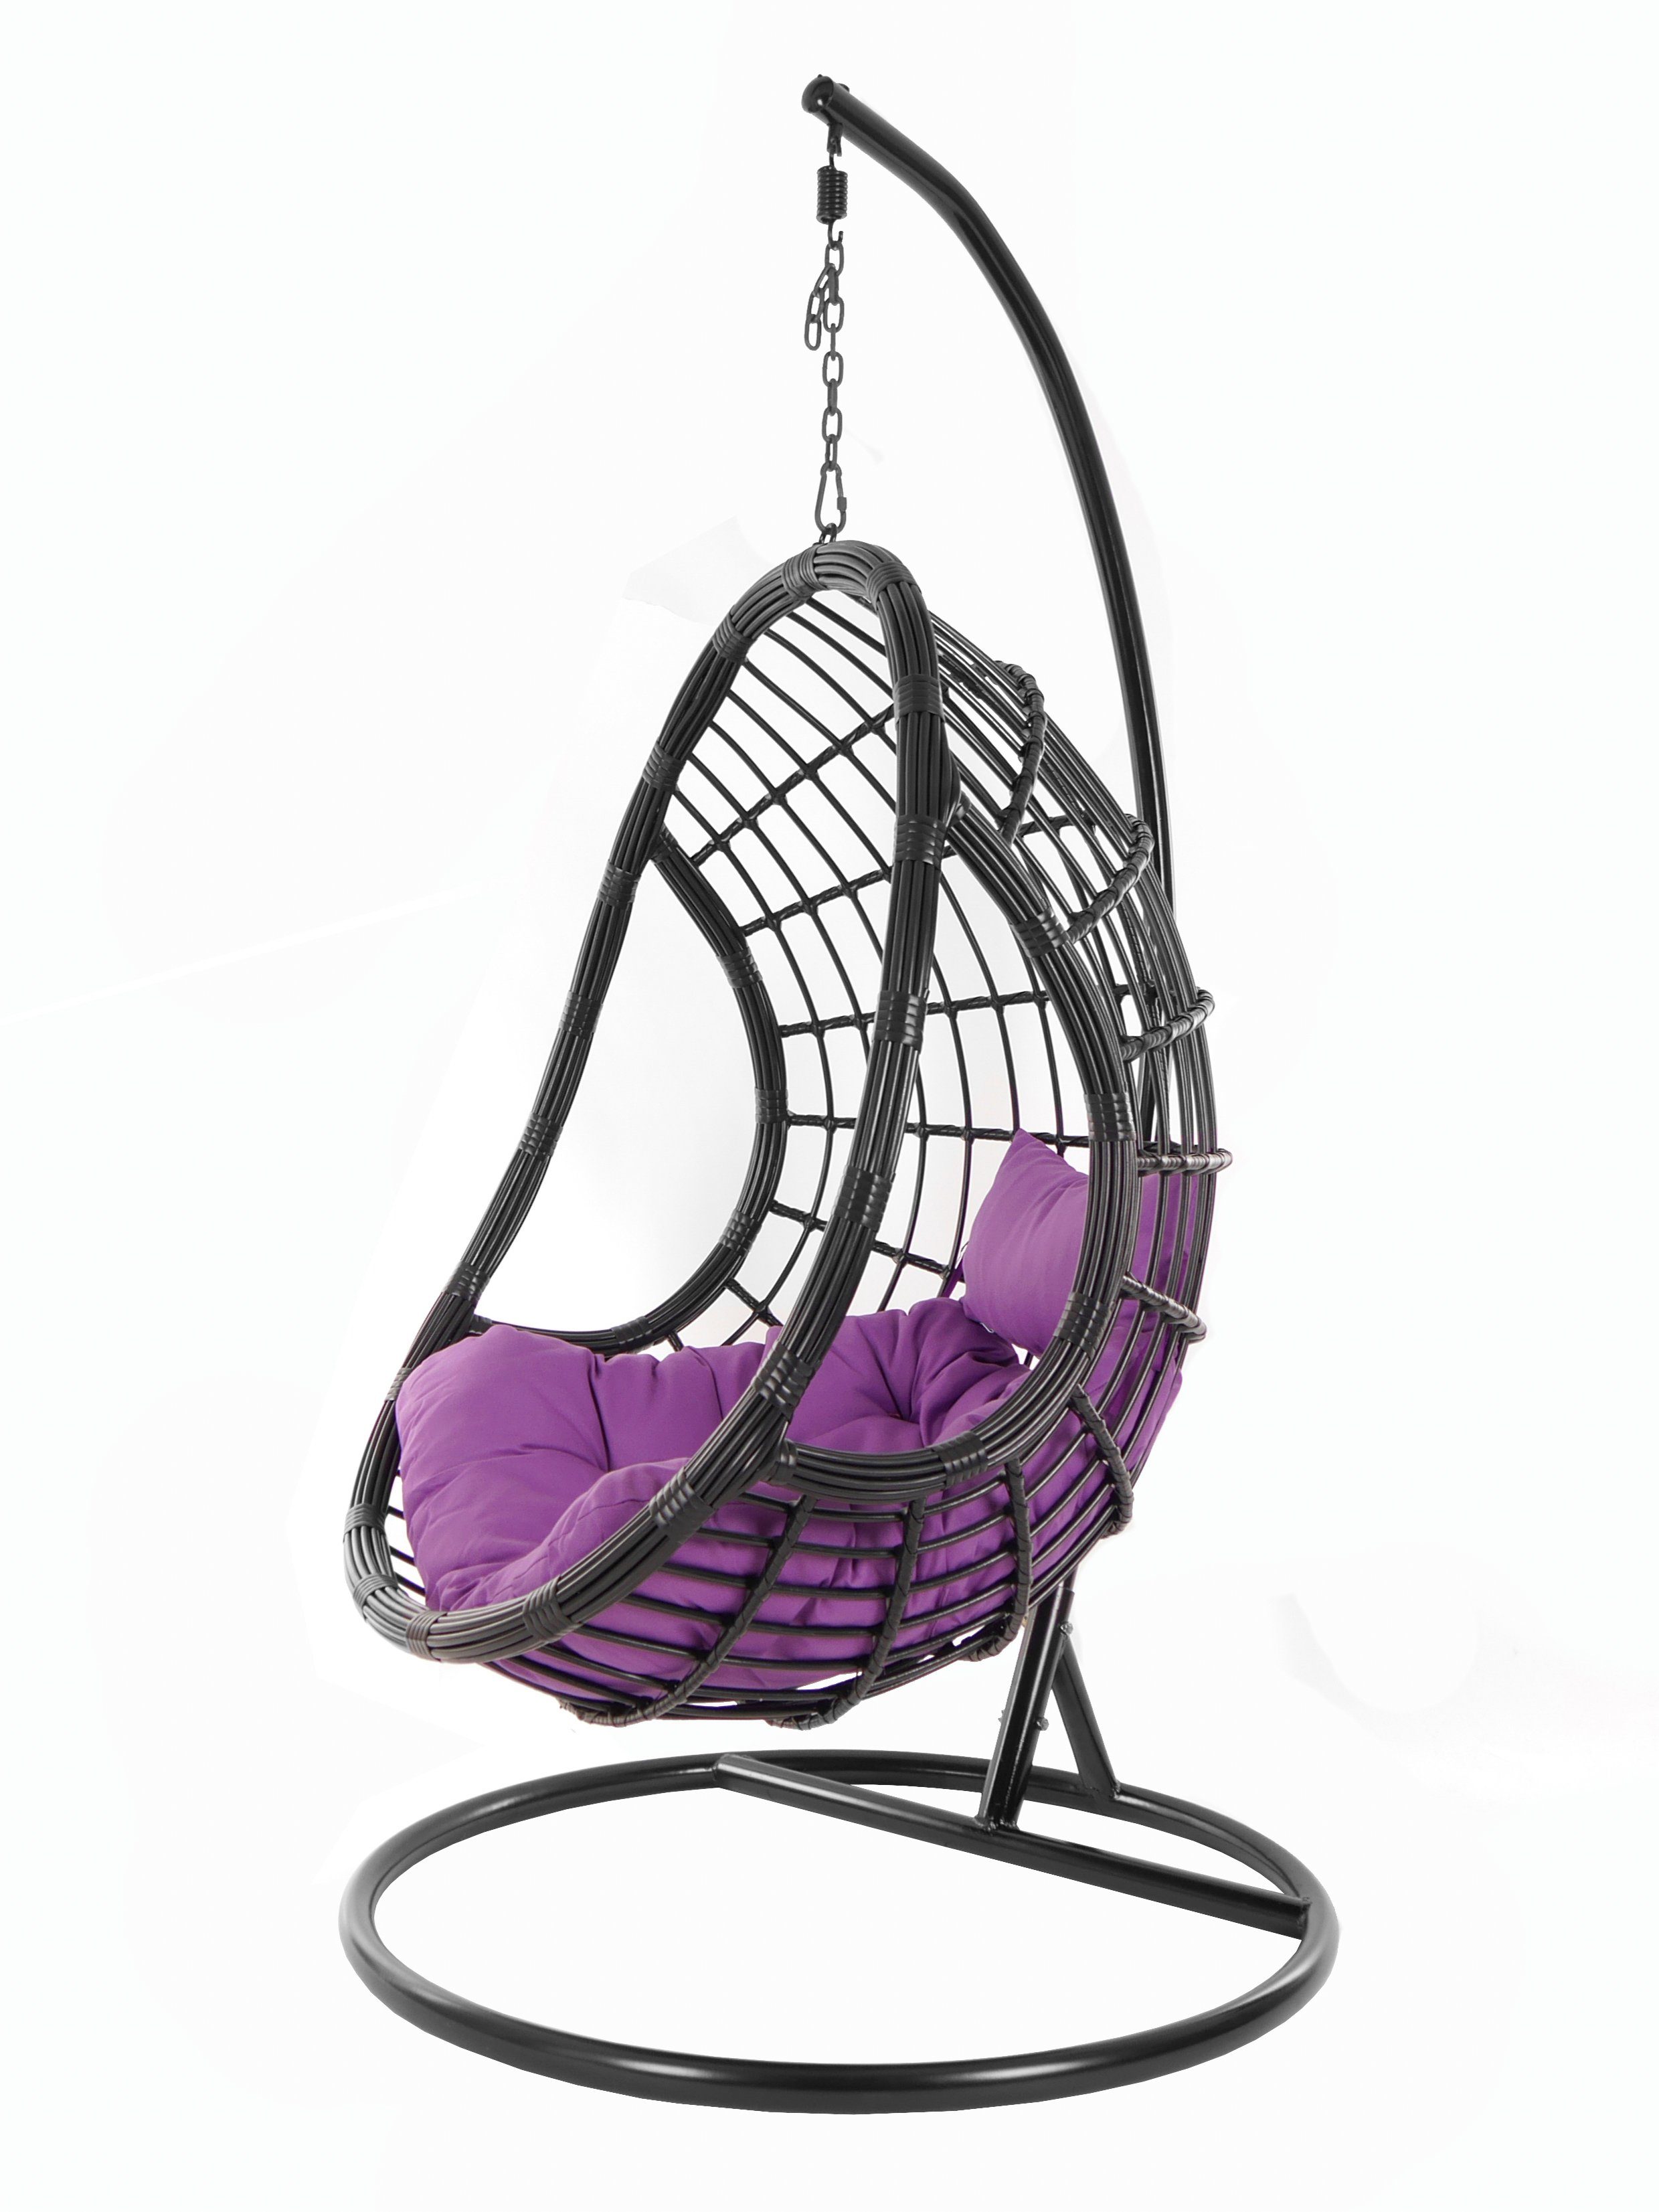 KIDEO Hängesessel PALMANOVA black, Swing Chair, (4050 Hängesessel lila und mit Design edles Loungemöbel, Schwebesessel, Gestell violet) Kissen, schwarz